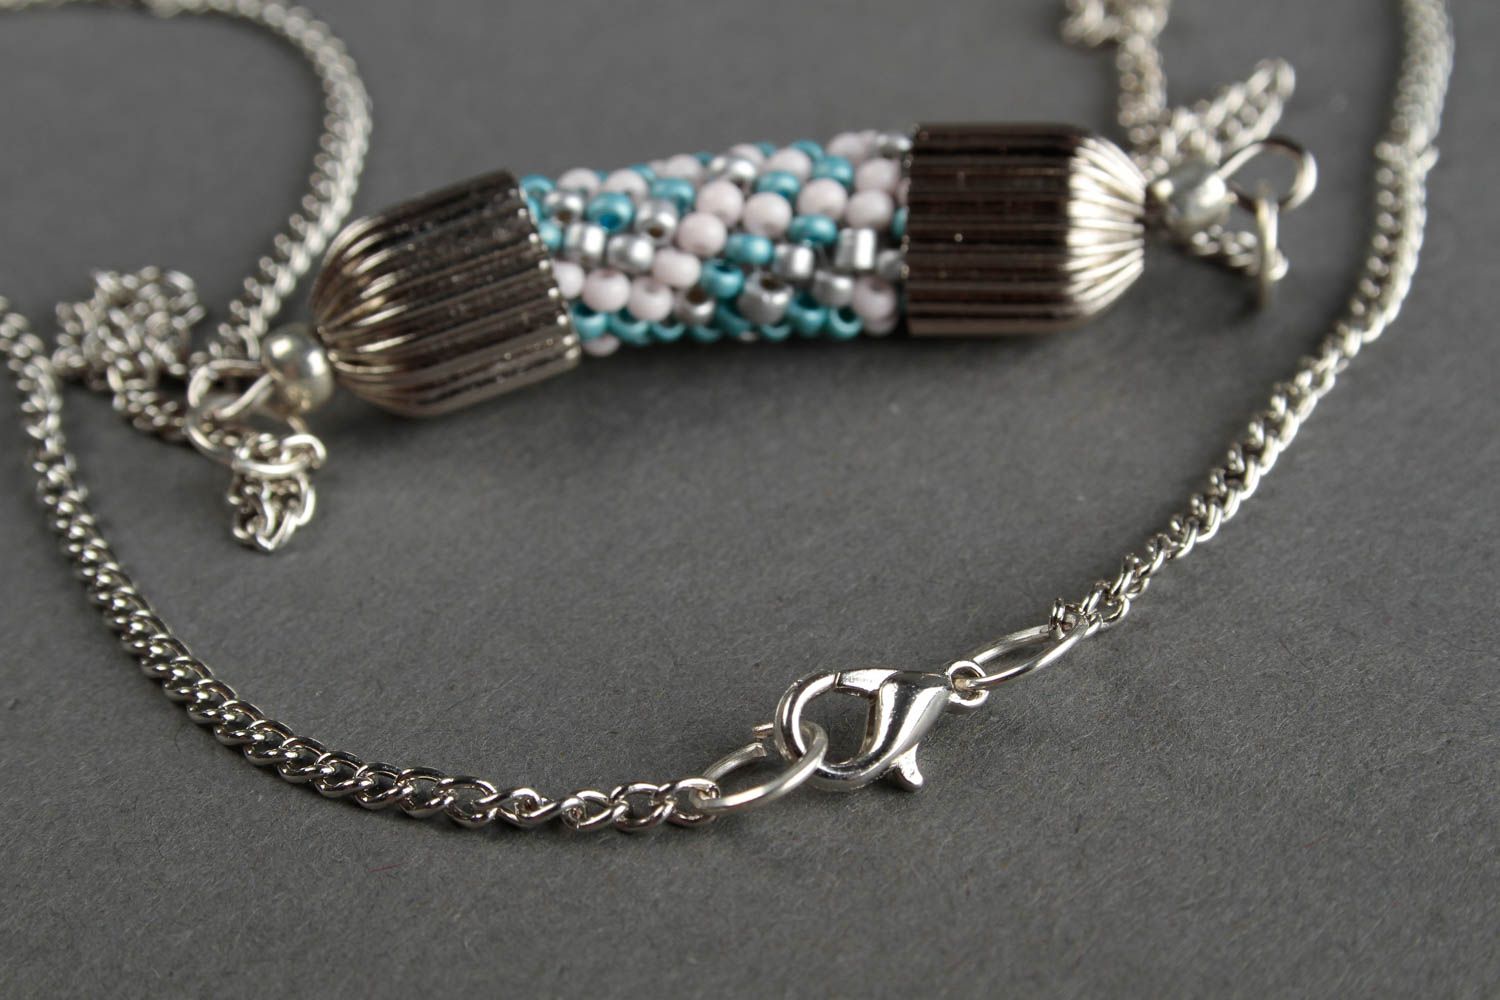 Handmade beautiful beaded necklace stylish elegant necklace female jewelry photo 5